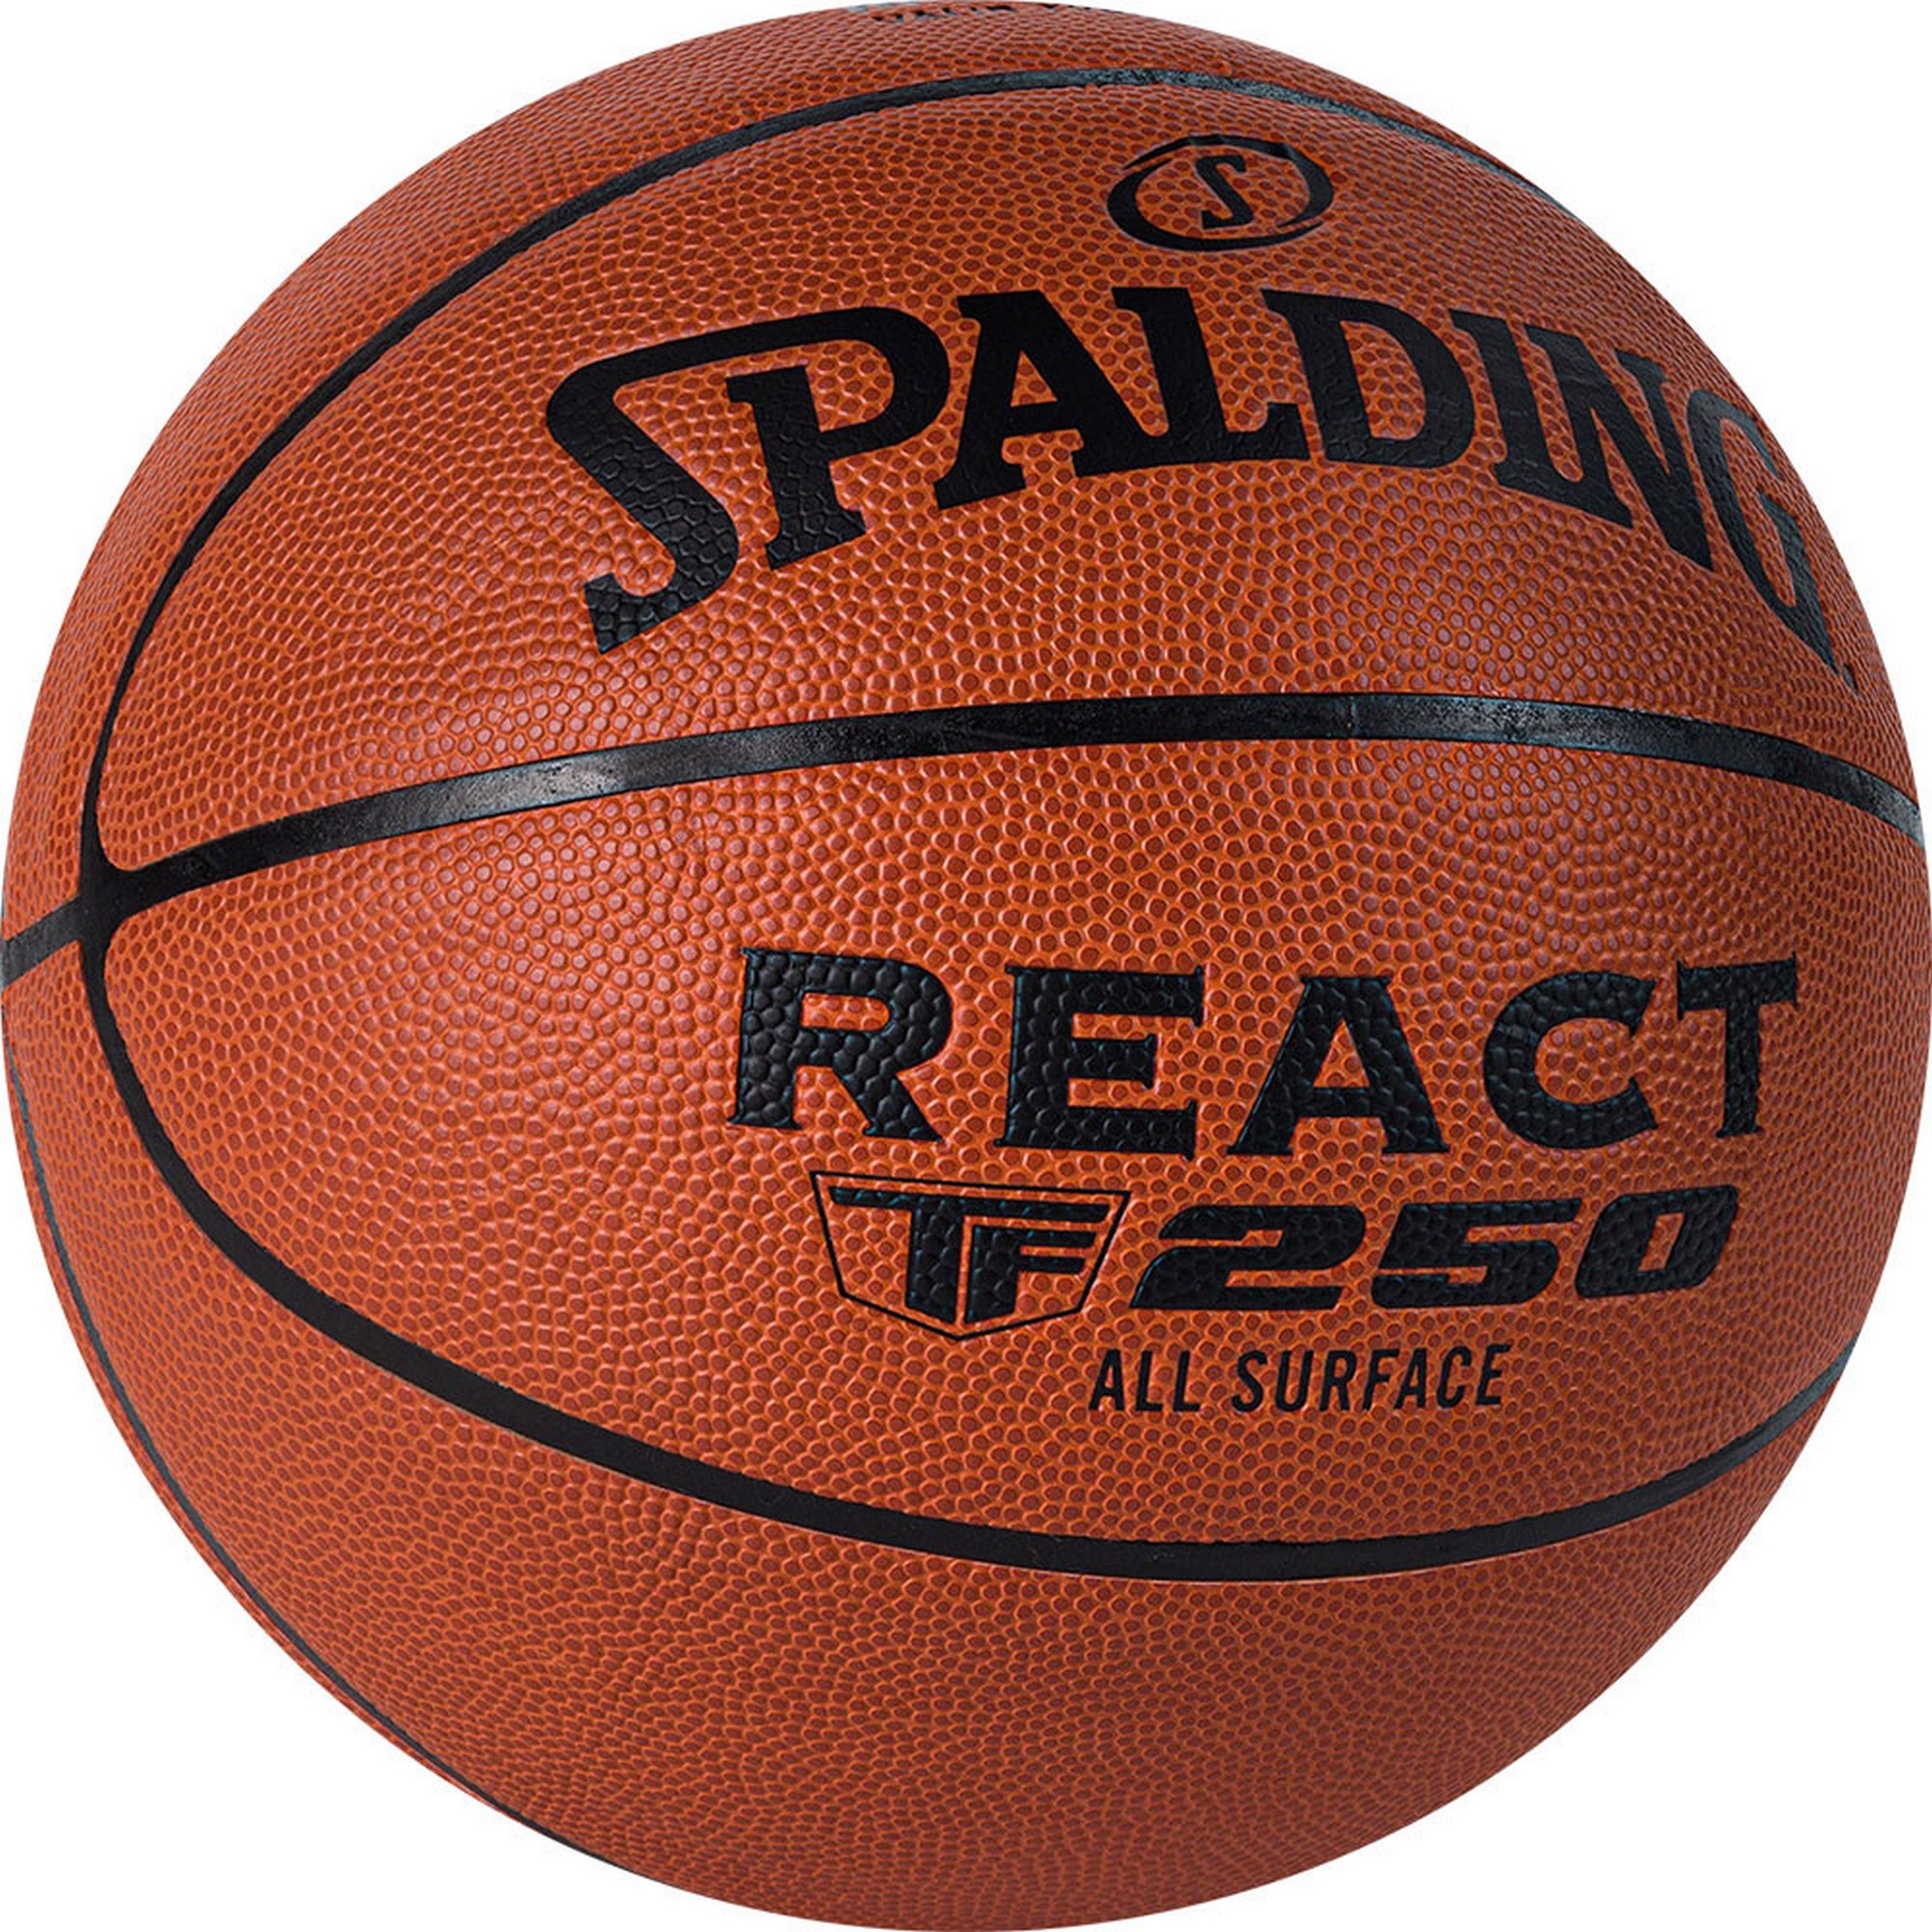 Мяч баскетбольный Spalding React TF 250 76-967Z р.7,  - купить со скидкой